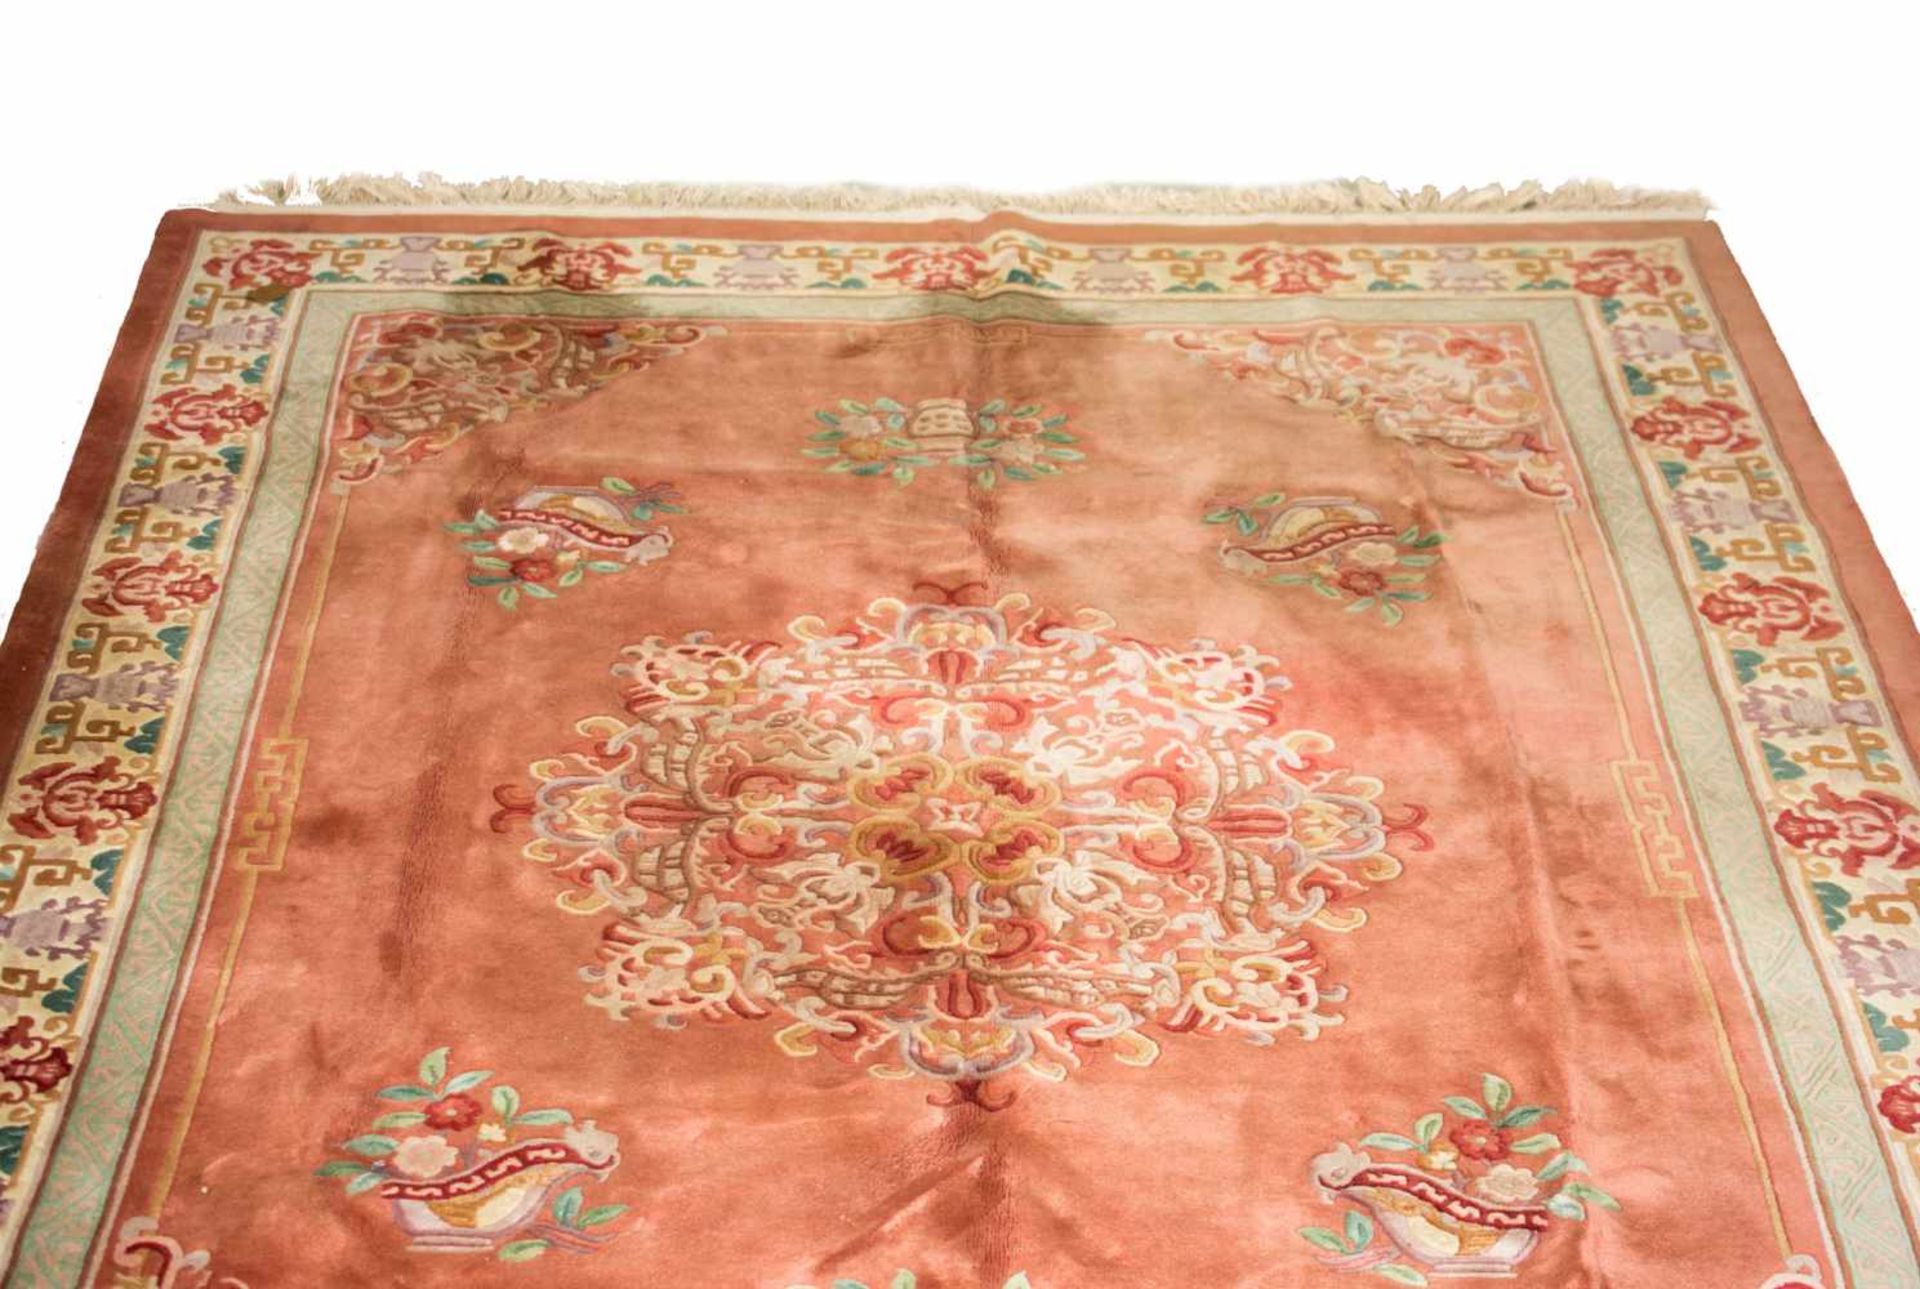 Asiatischer TeppichChina, Wolle auf Baumwolle, 344 cm x 249 cm, GebrauchsspurenDieses Los wird in